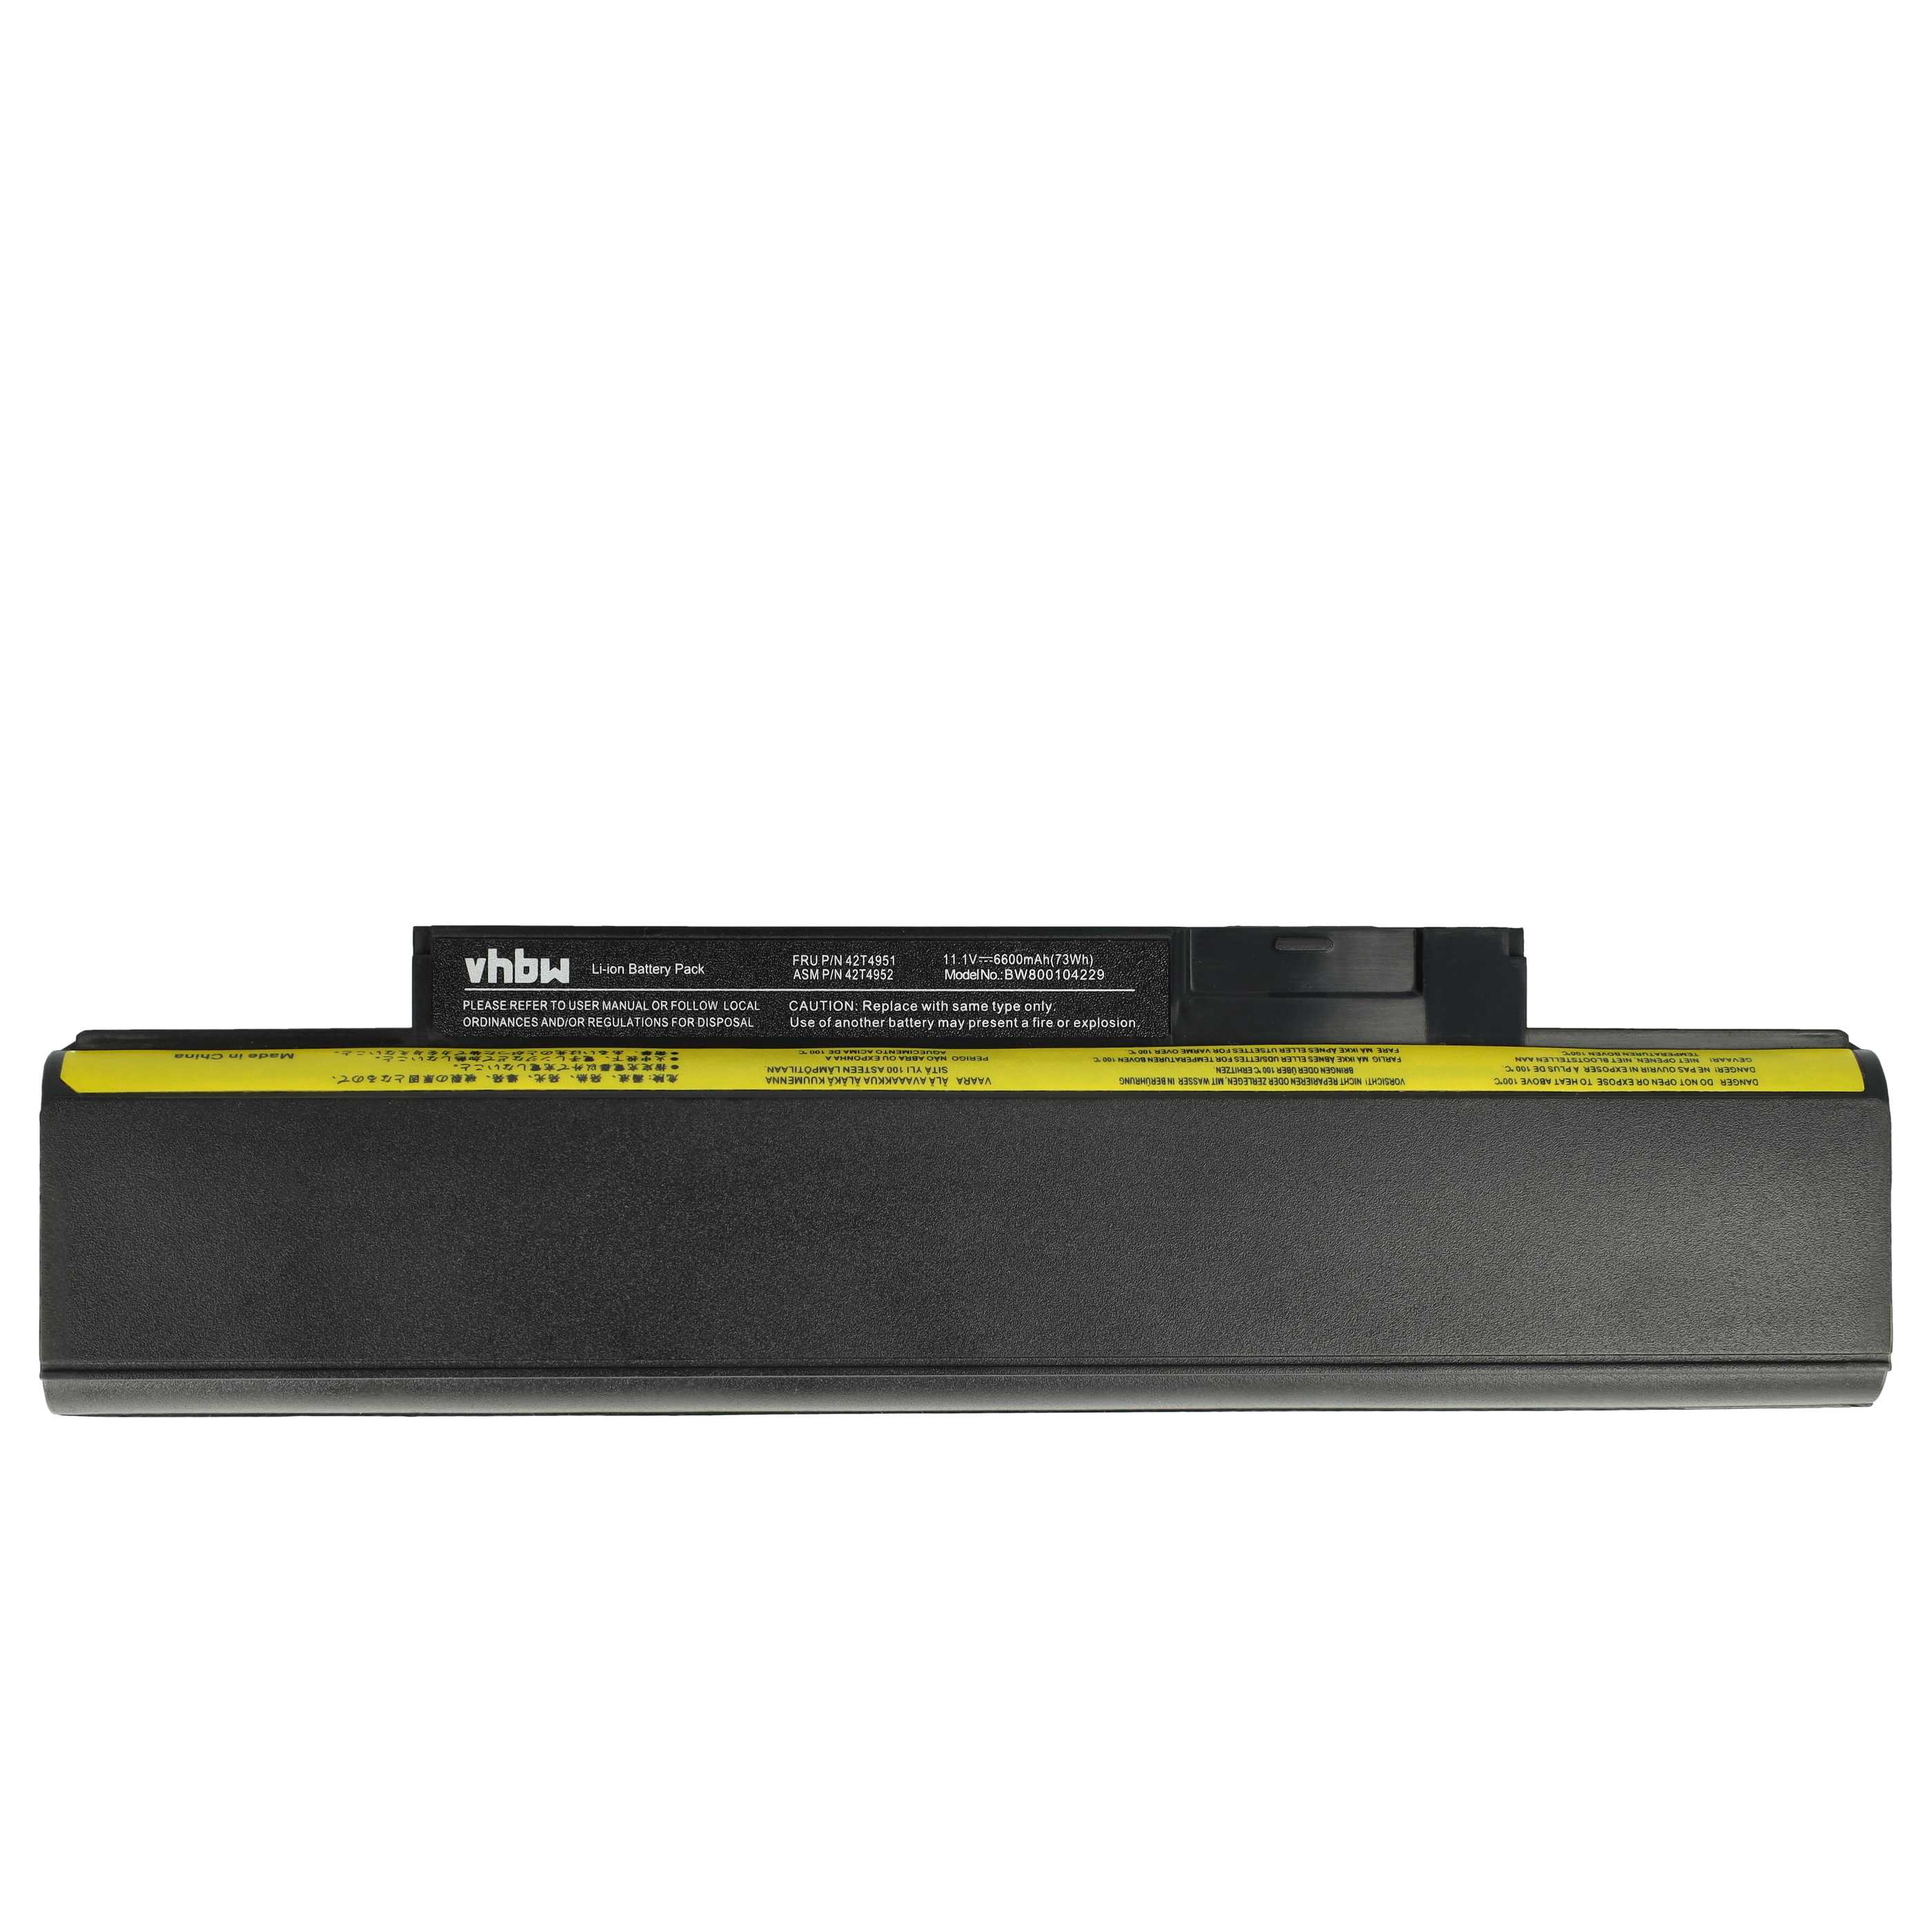 Batería reemplaza Lenovo 42T4943, 0A36292, 0A36290 para notebook Lenovo - 6600 mAh 11,1 V Li-Ion negro